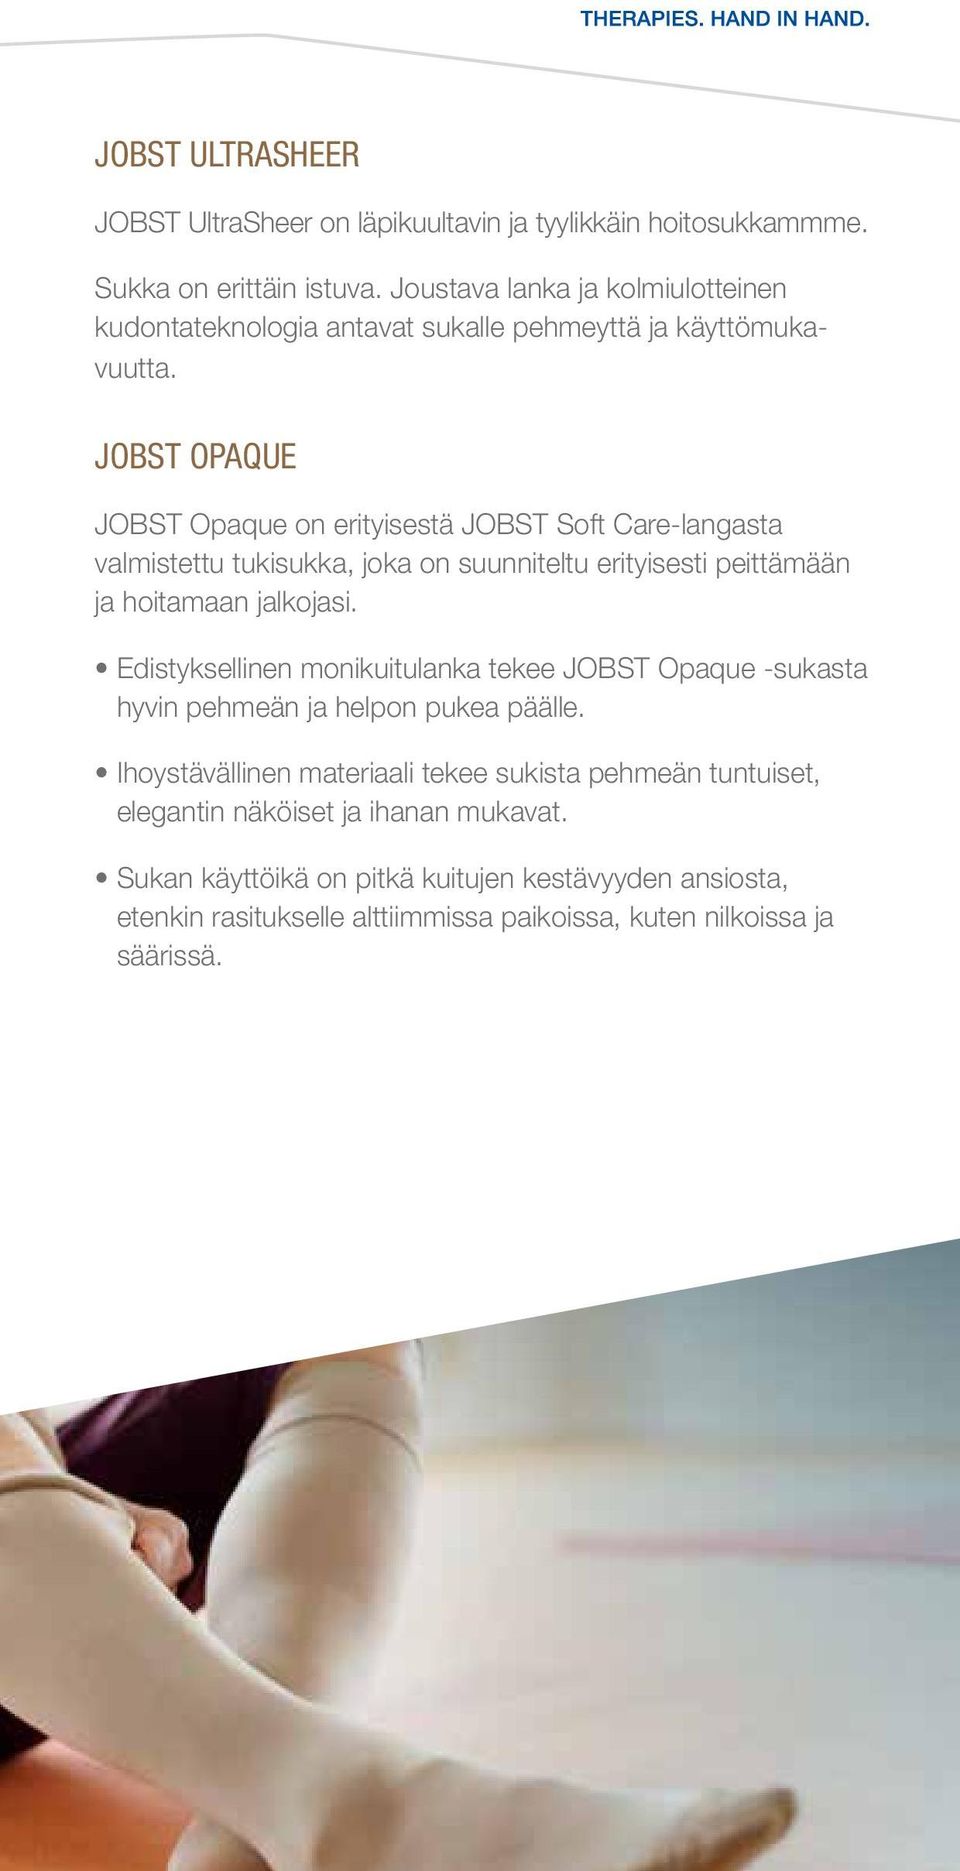 JOBST OPAQUE JOBST Opaque on erityisestä JOBST Soft Care-langasta valmistettu tukisukka, joka on suunniteltu erityisesti peittämään ja hoitamaan jalkojasi.